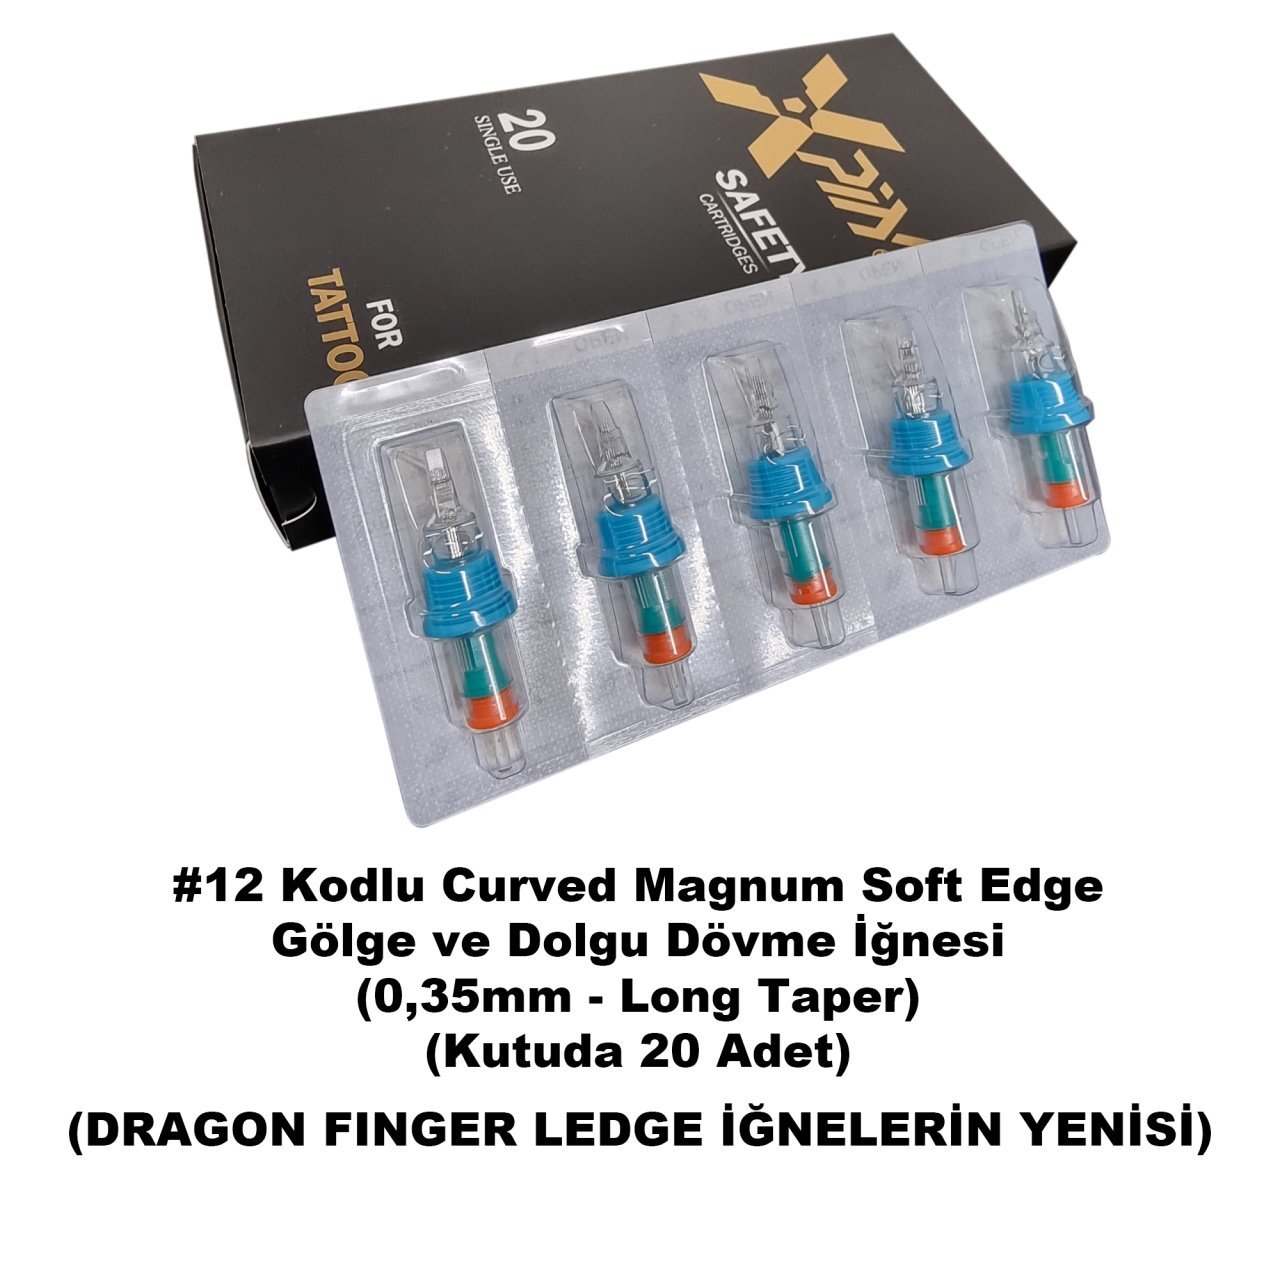 Dragon Xpin Finger Ledge #12 Kodlu Curved Magnum Long Taper Kartuş Dövme İğnesi Gölge ve Dolgu İçin Cartridge İğne SEMLT